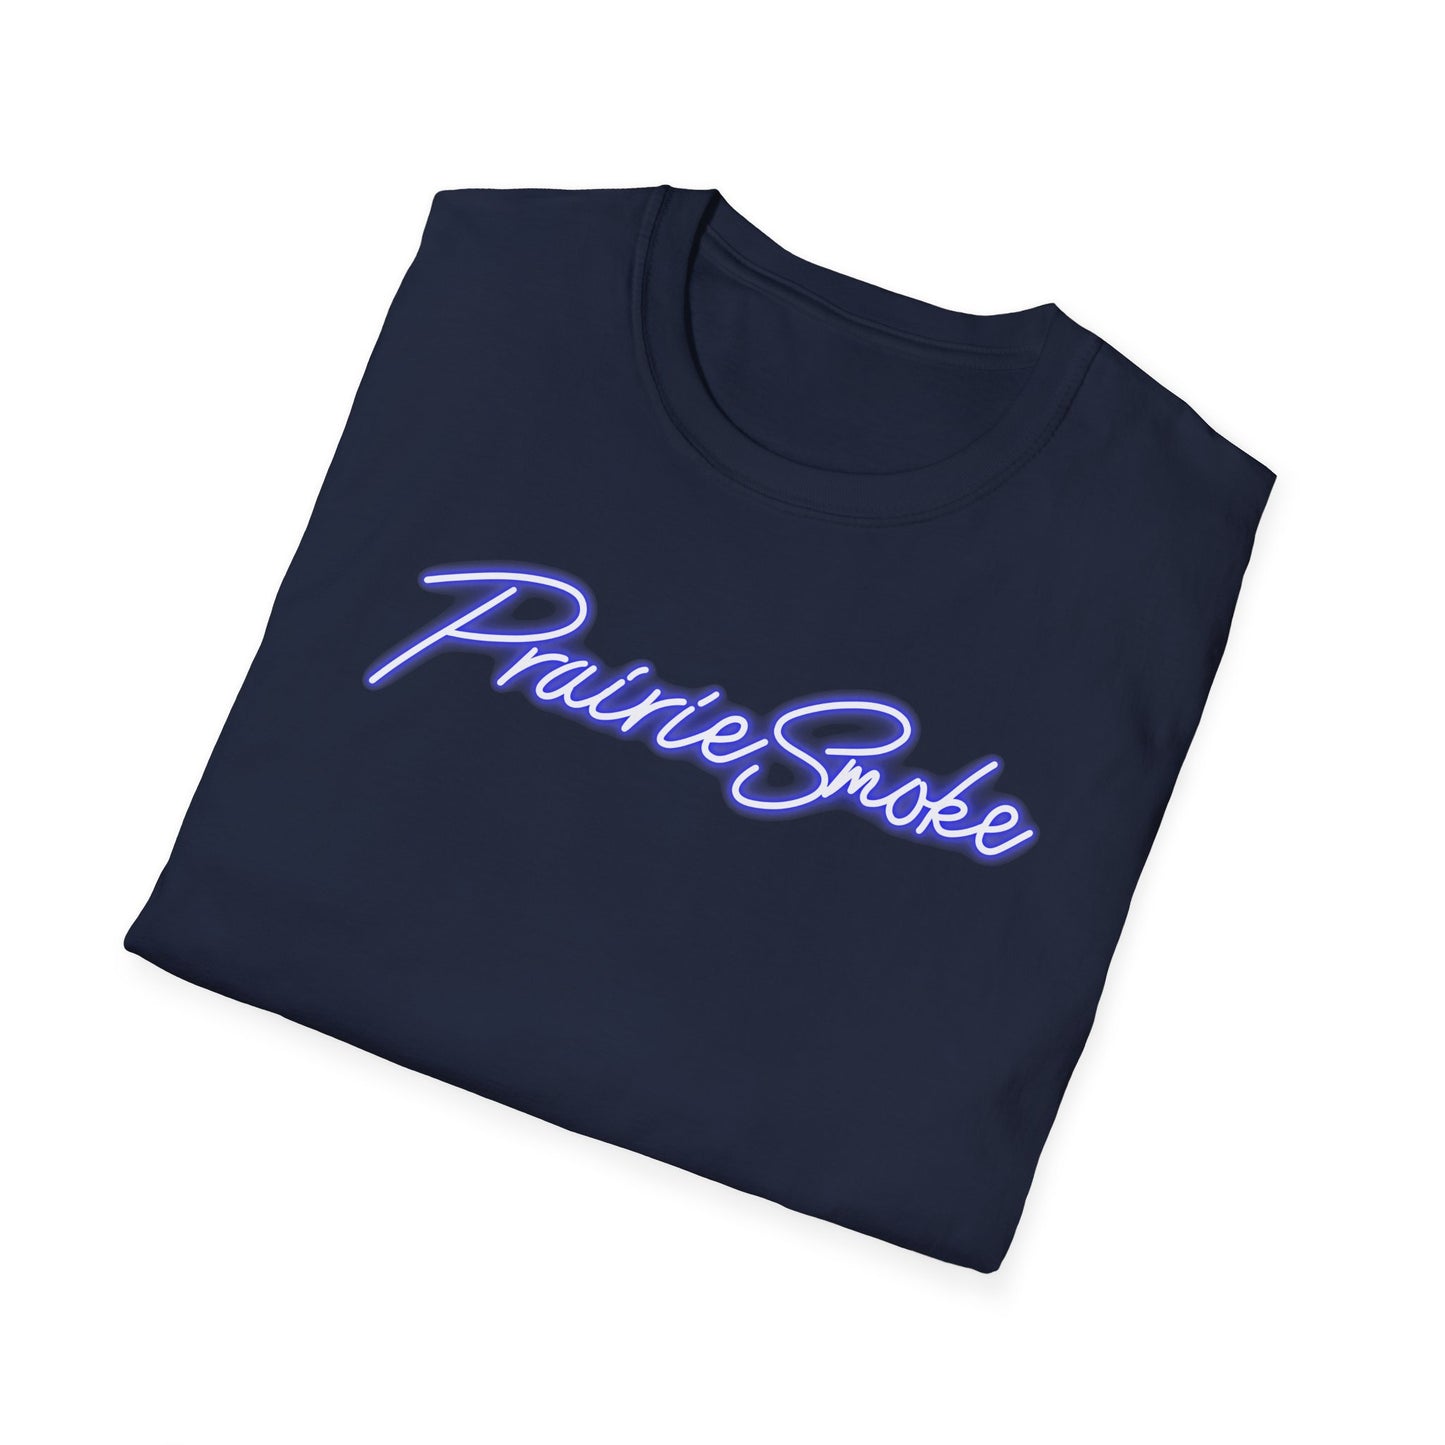 PrairieSmoke Classic Shirt